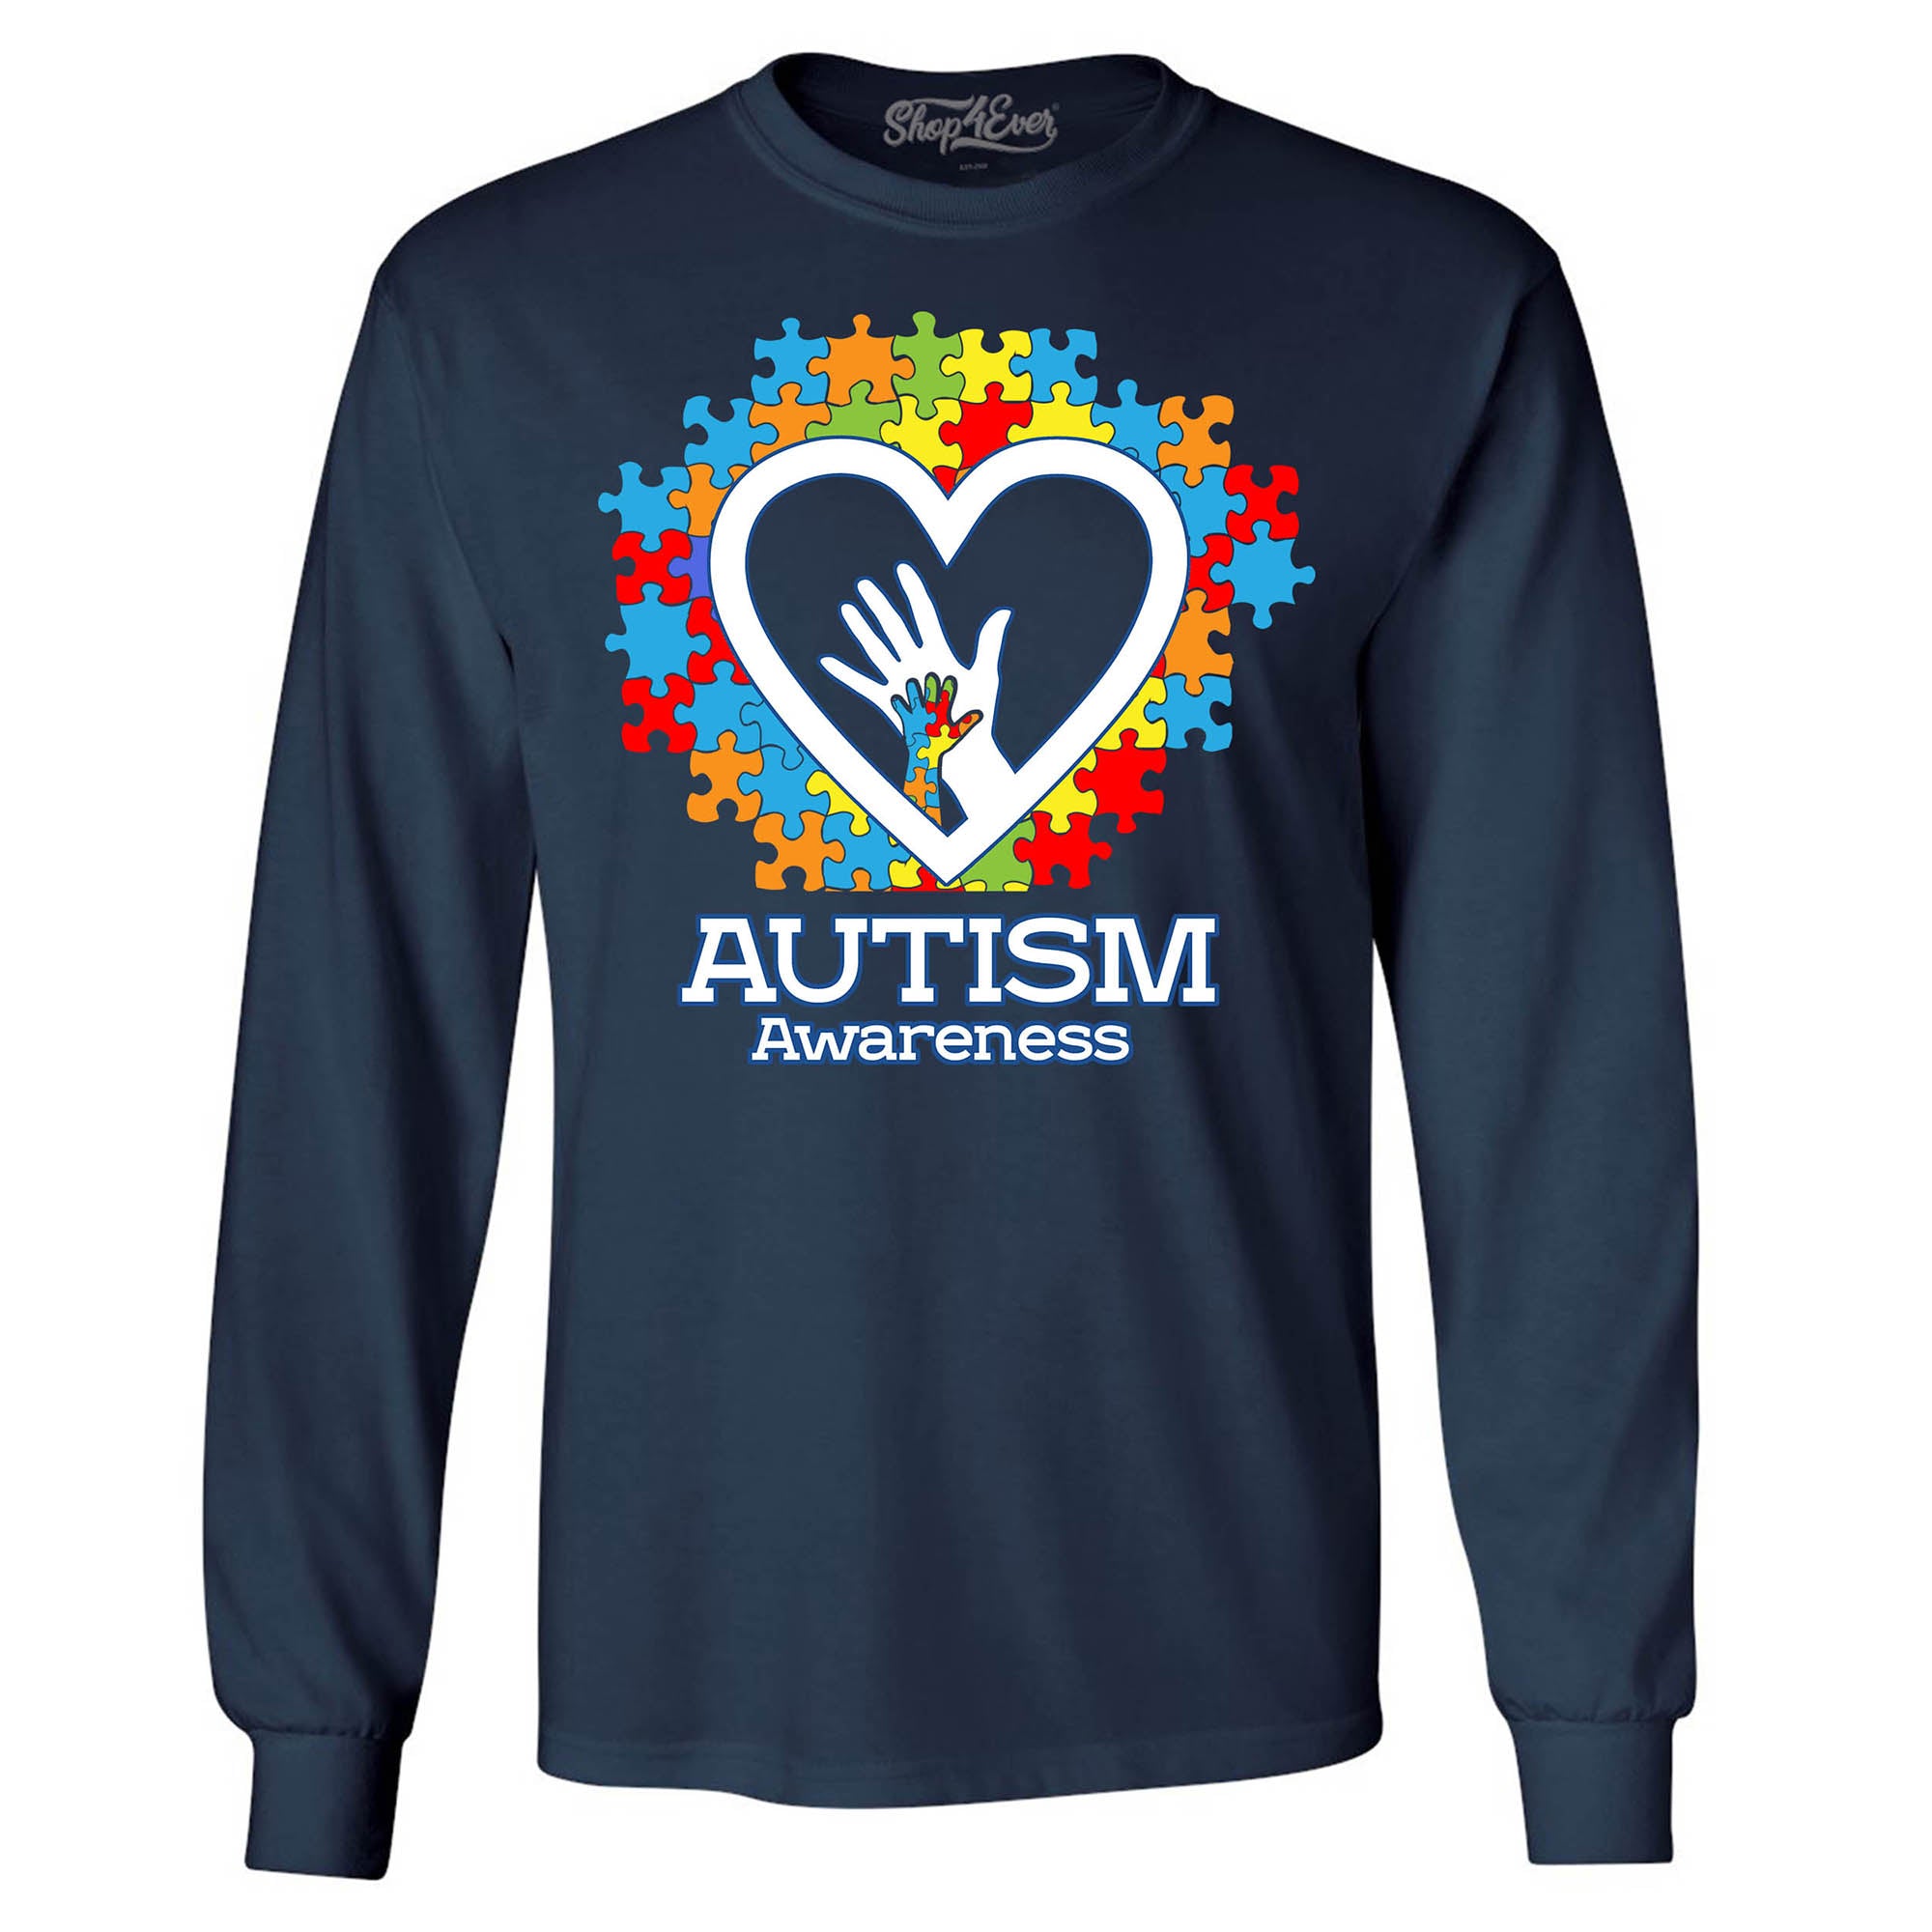 Autism Awareness Hands in Heart Men's Long Sleeve Shirt